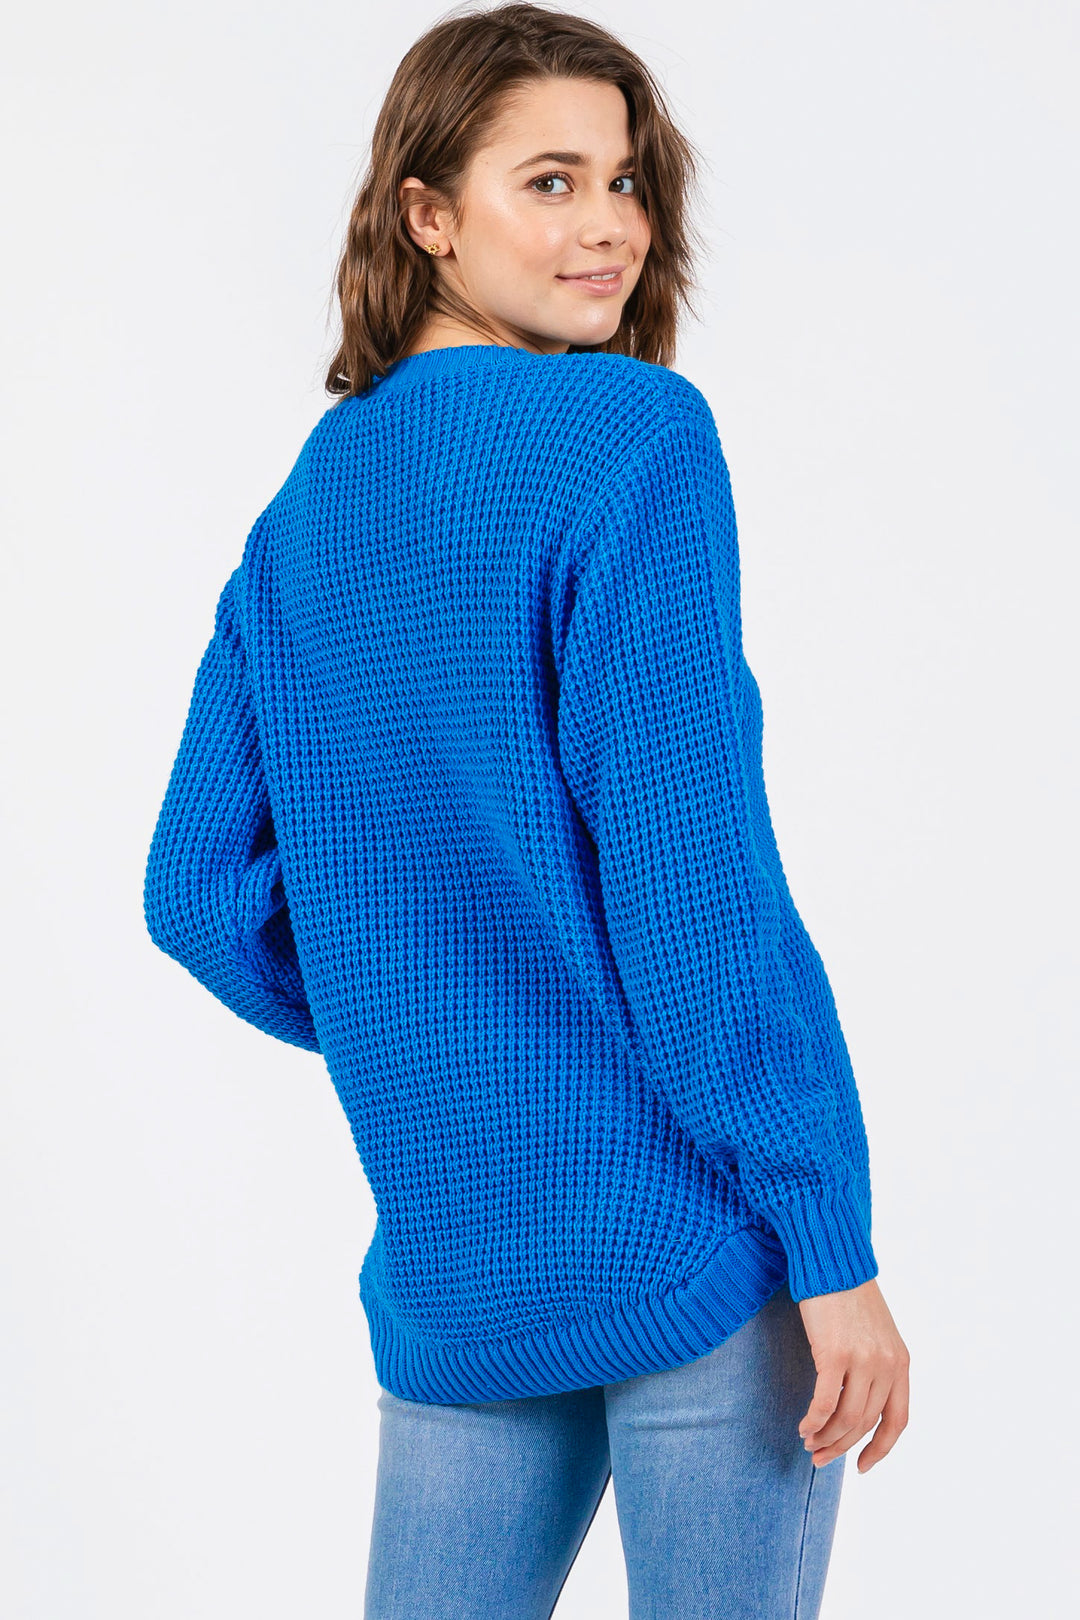 Zen Waffle Knit Sweater (Ocean Blue)